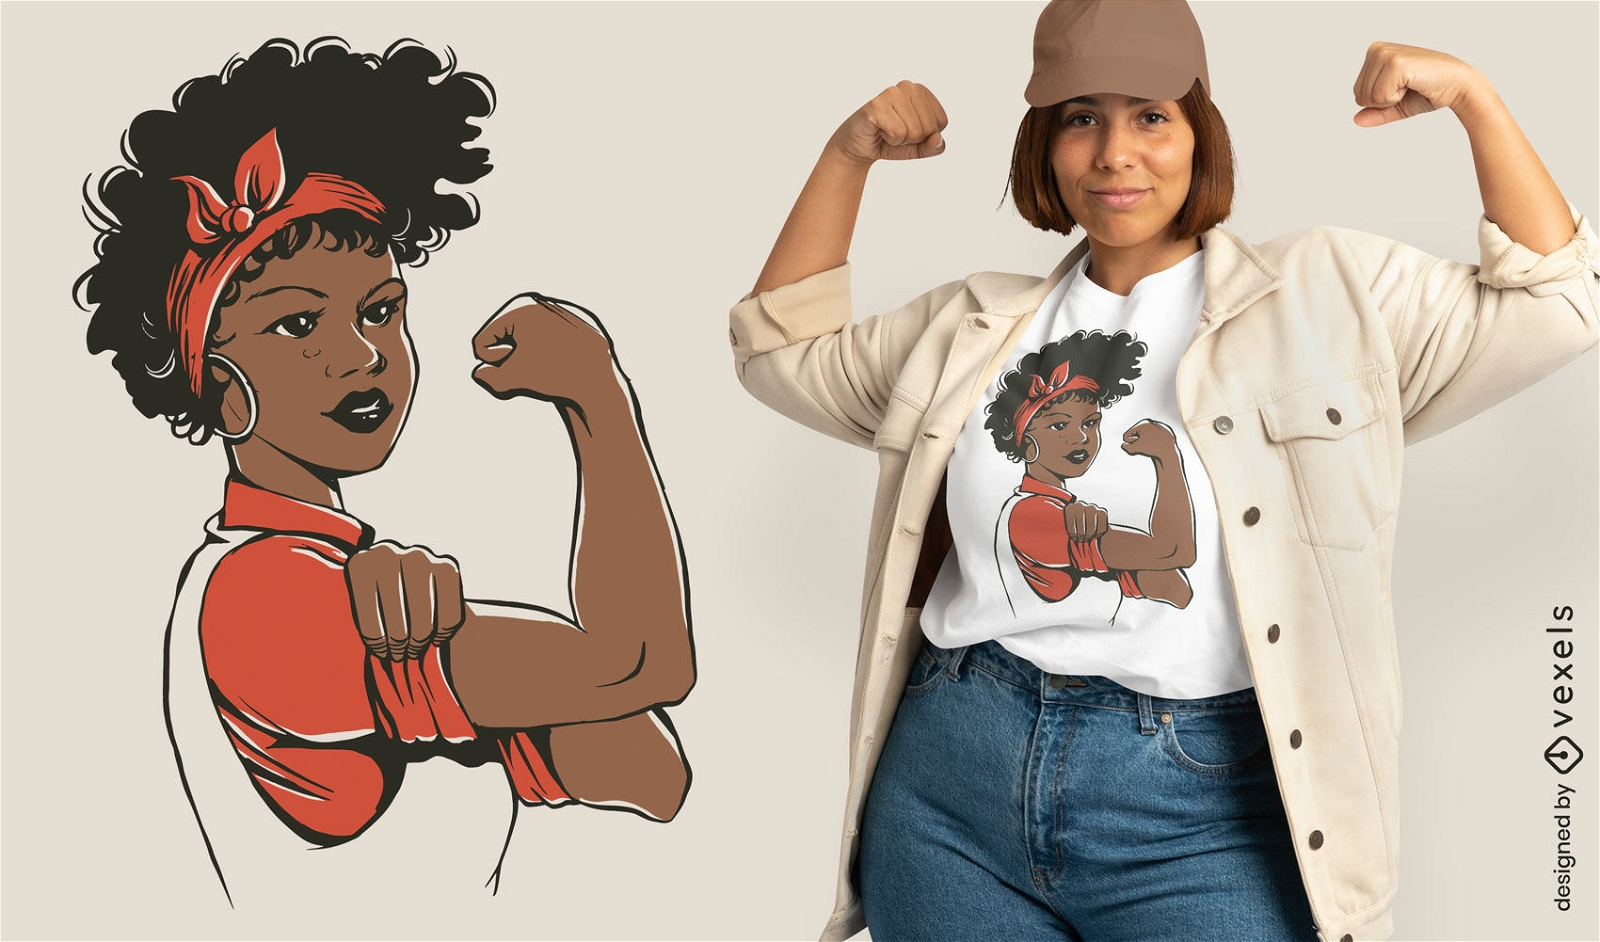 Dise?o de camiseta feminista de mujer negra fuerte.